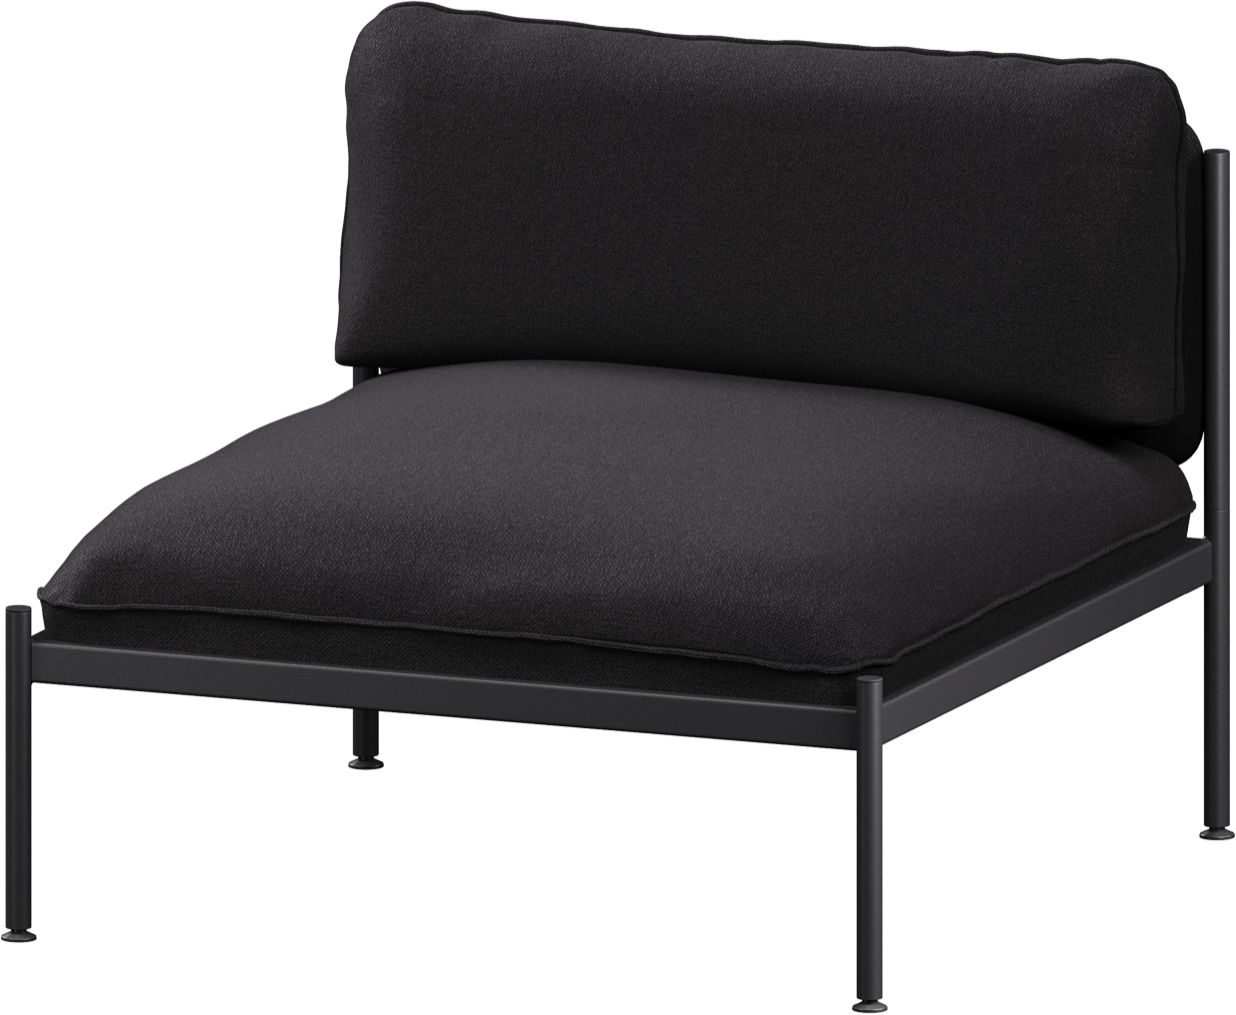 Toom Modular Stuhl in Graphite Black  präsentiert im Onlineshop von KAQTU Design AG. Sessel ist von Noo.ma